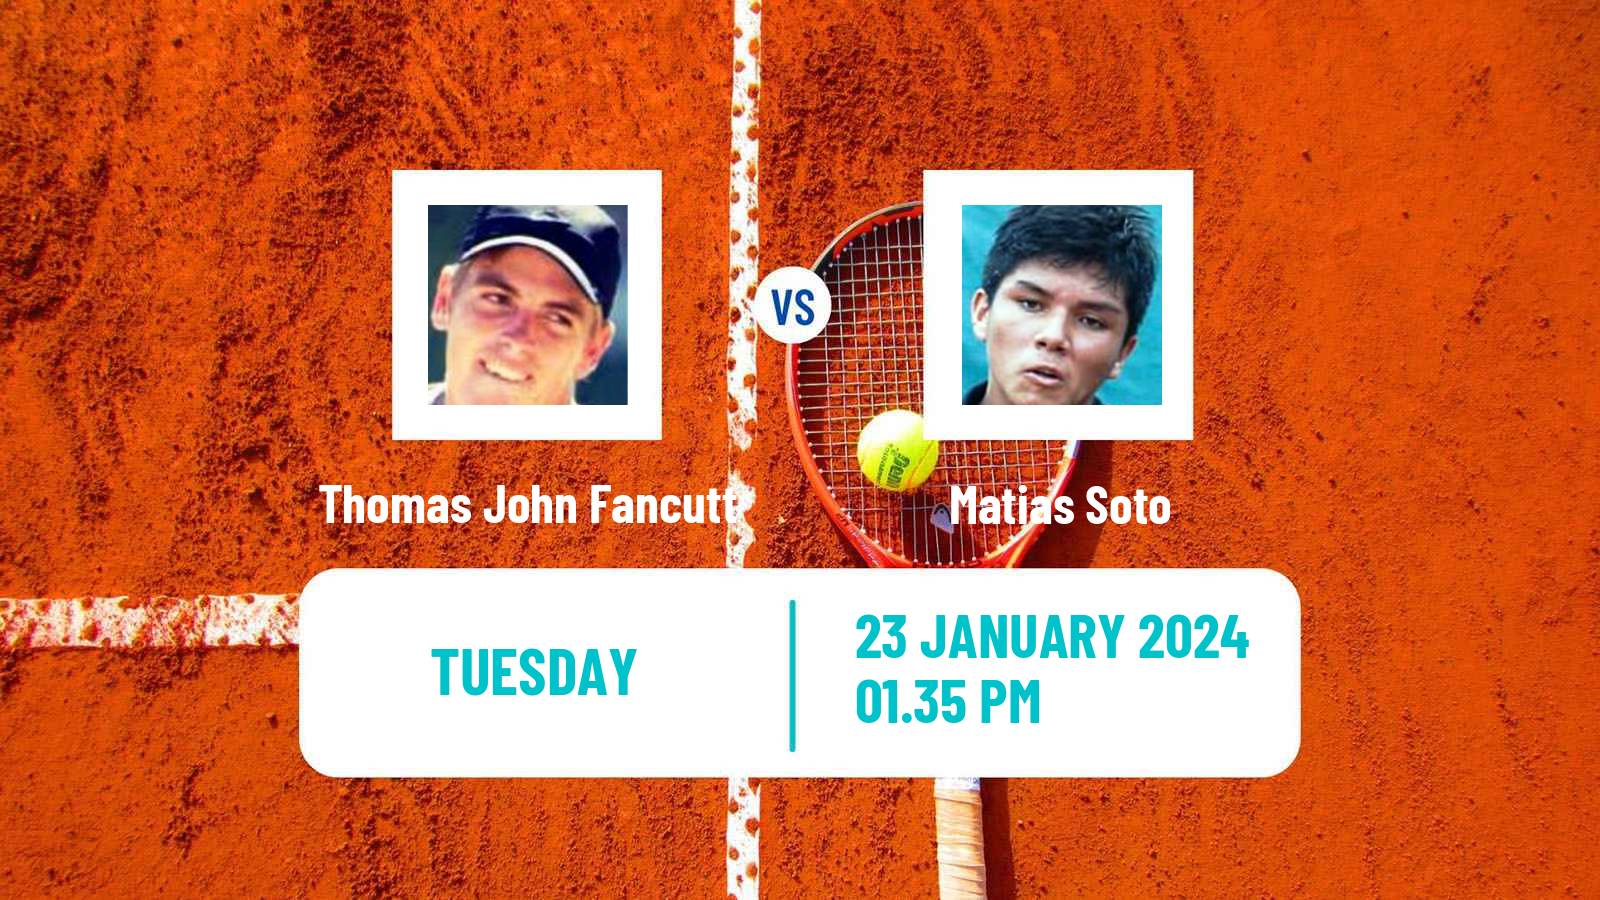 Tennis Indian Wells 2 Challenger Men Thomas John Fancutt - Matias Soto